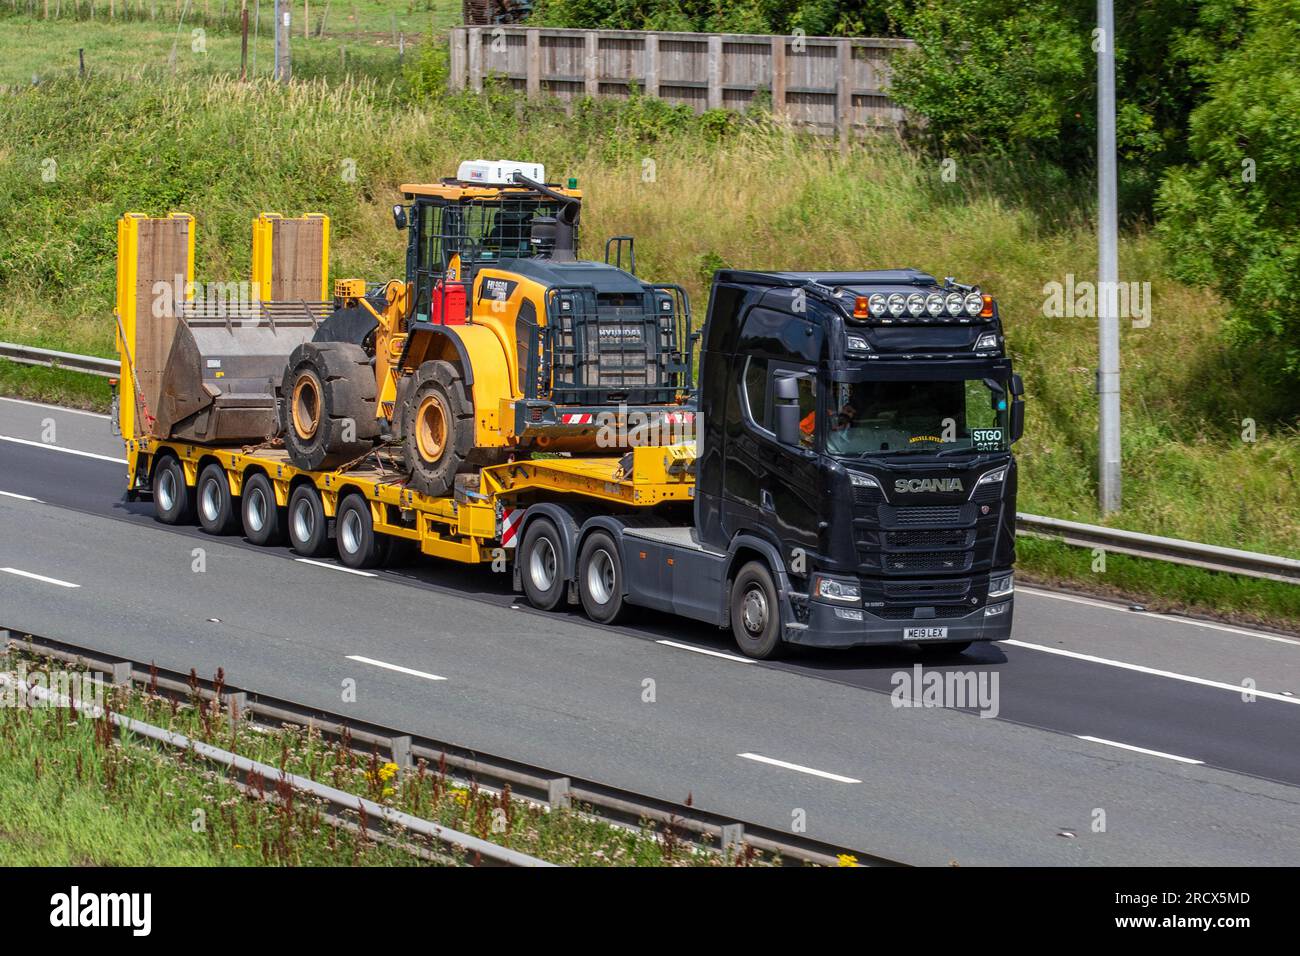 Camion Scania Diesel 16353 cc « Argyll style » 2019, avec chargeur surbaissé articulé STGO CAT 2 transportant des chargeuses sur pneus HYUNDAI HL960, circulant sur l'autoroute M6 dans le Grand Manchester, au Royaume-Uni Banque D'Images